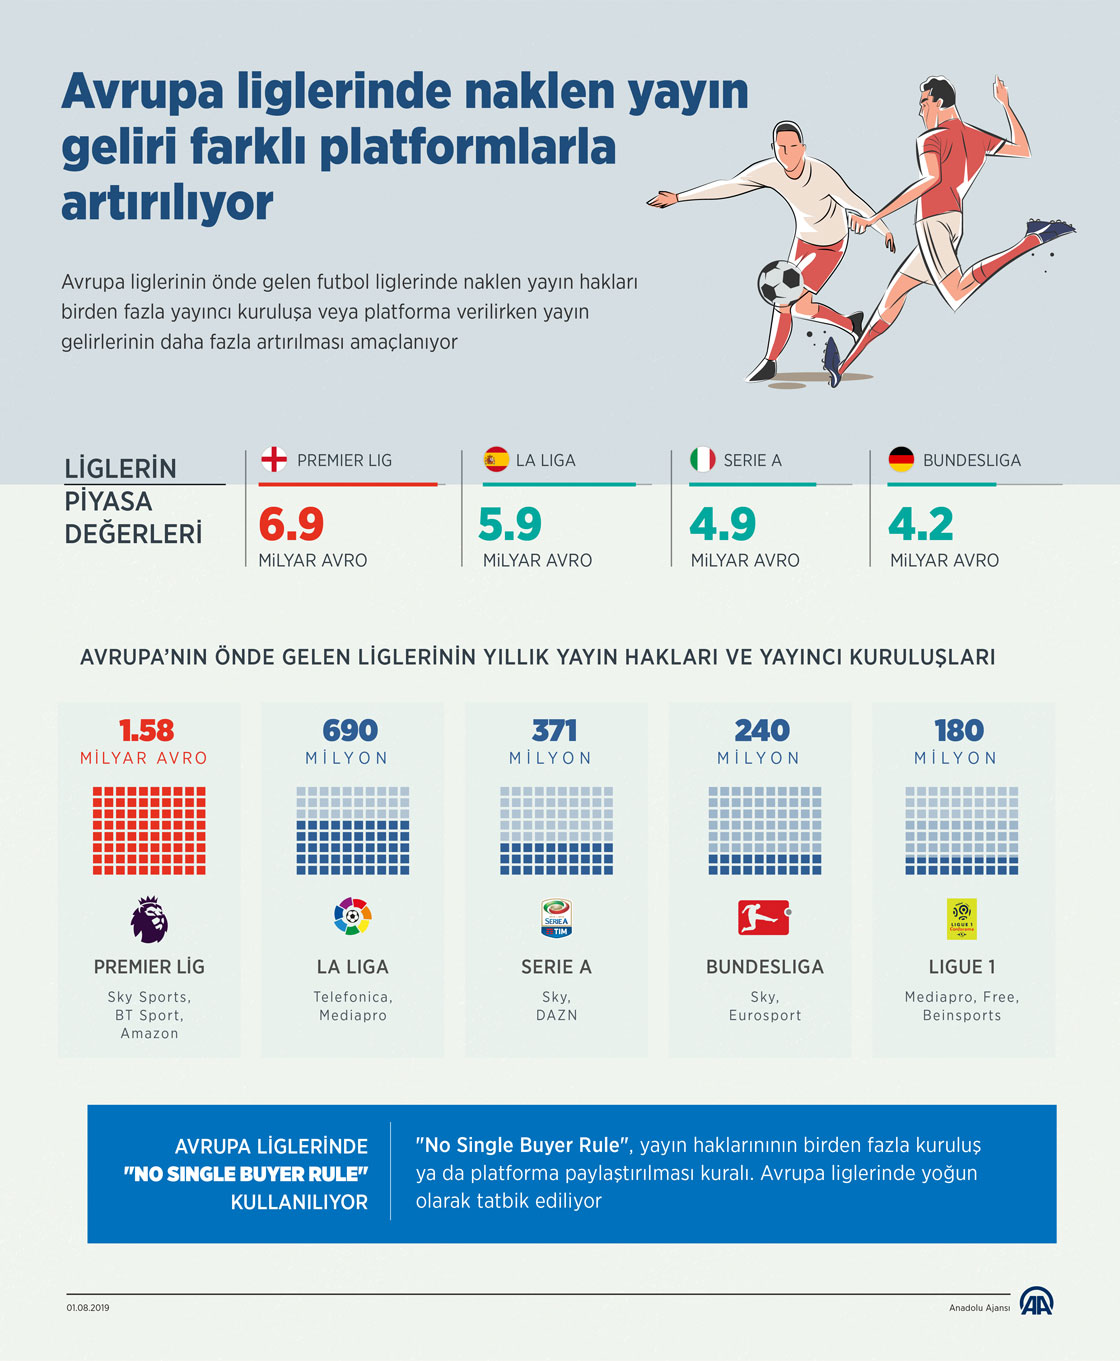 Avrupa liglerinde naklen yayın geliri farklı platformlarla artırılıyor